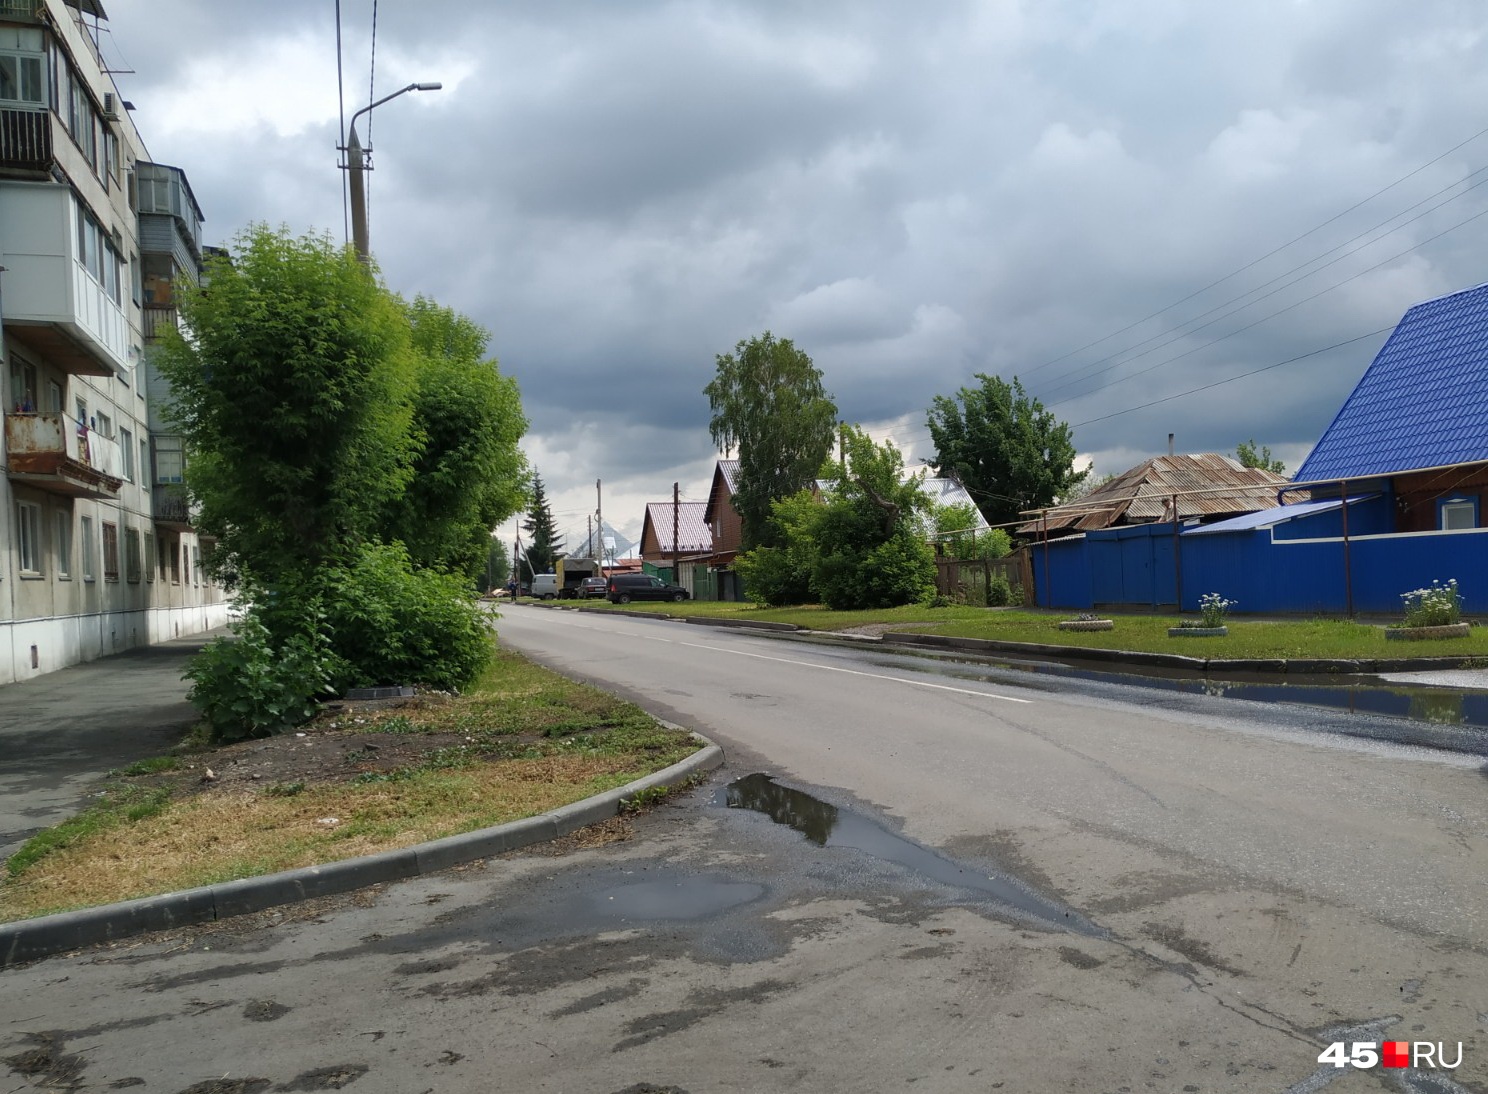 Вода при ливне стекает с дороги по Черняховского во дворы соседних домов